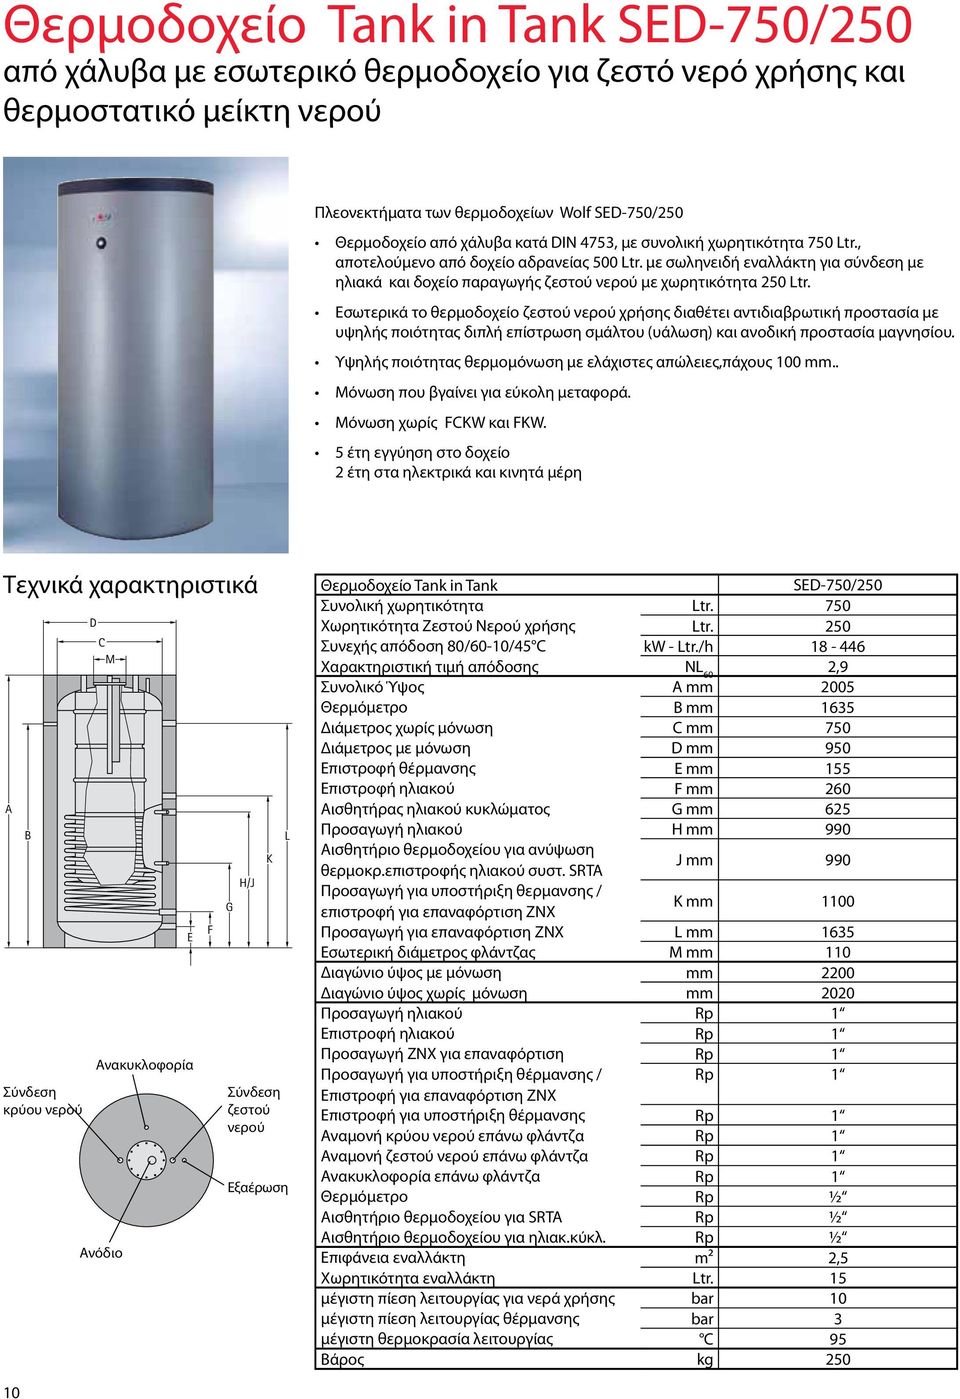 Εσωτερικά το θερμοδοχείο ζεστού νερού χρήσης διαθέτει αντιδιαβρωτική προστασία με υψηλής ποιότητας διπλή επίστρωση σμάλτου (υάλωση) και ανοδική προστασία μαγνησίου.